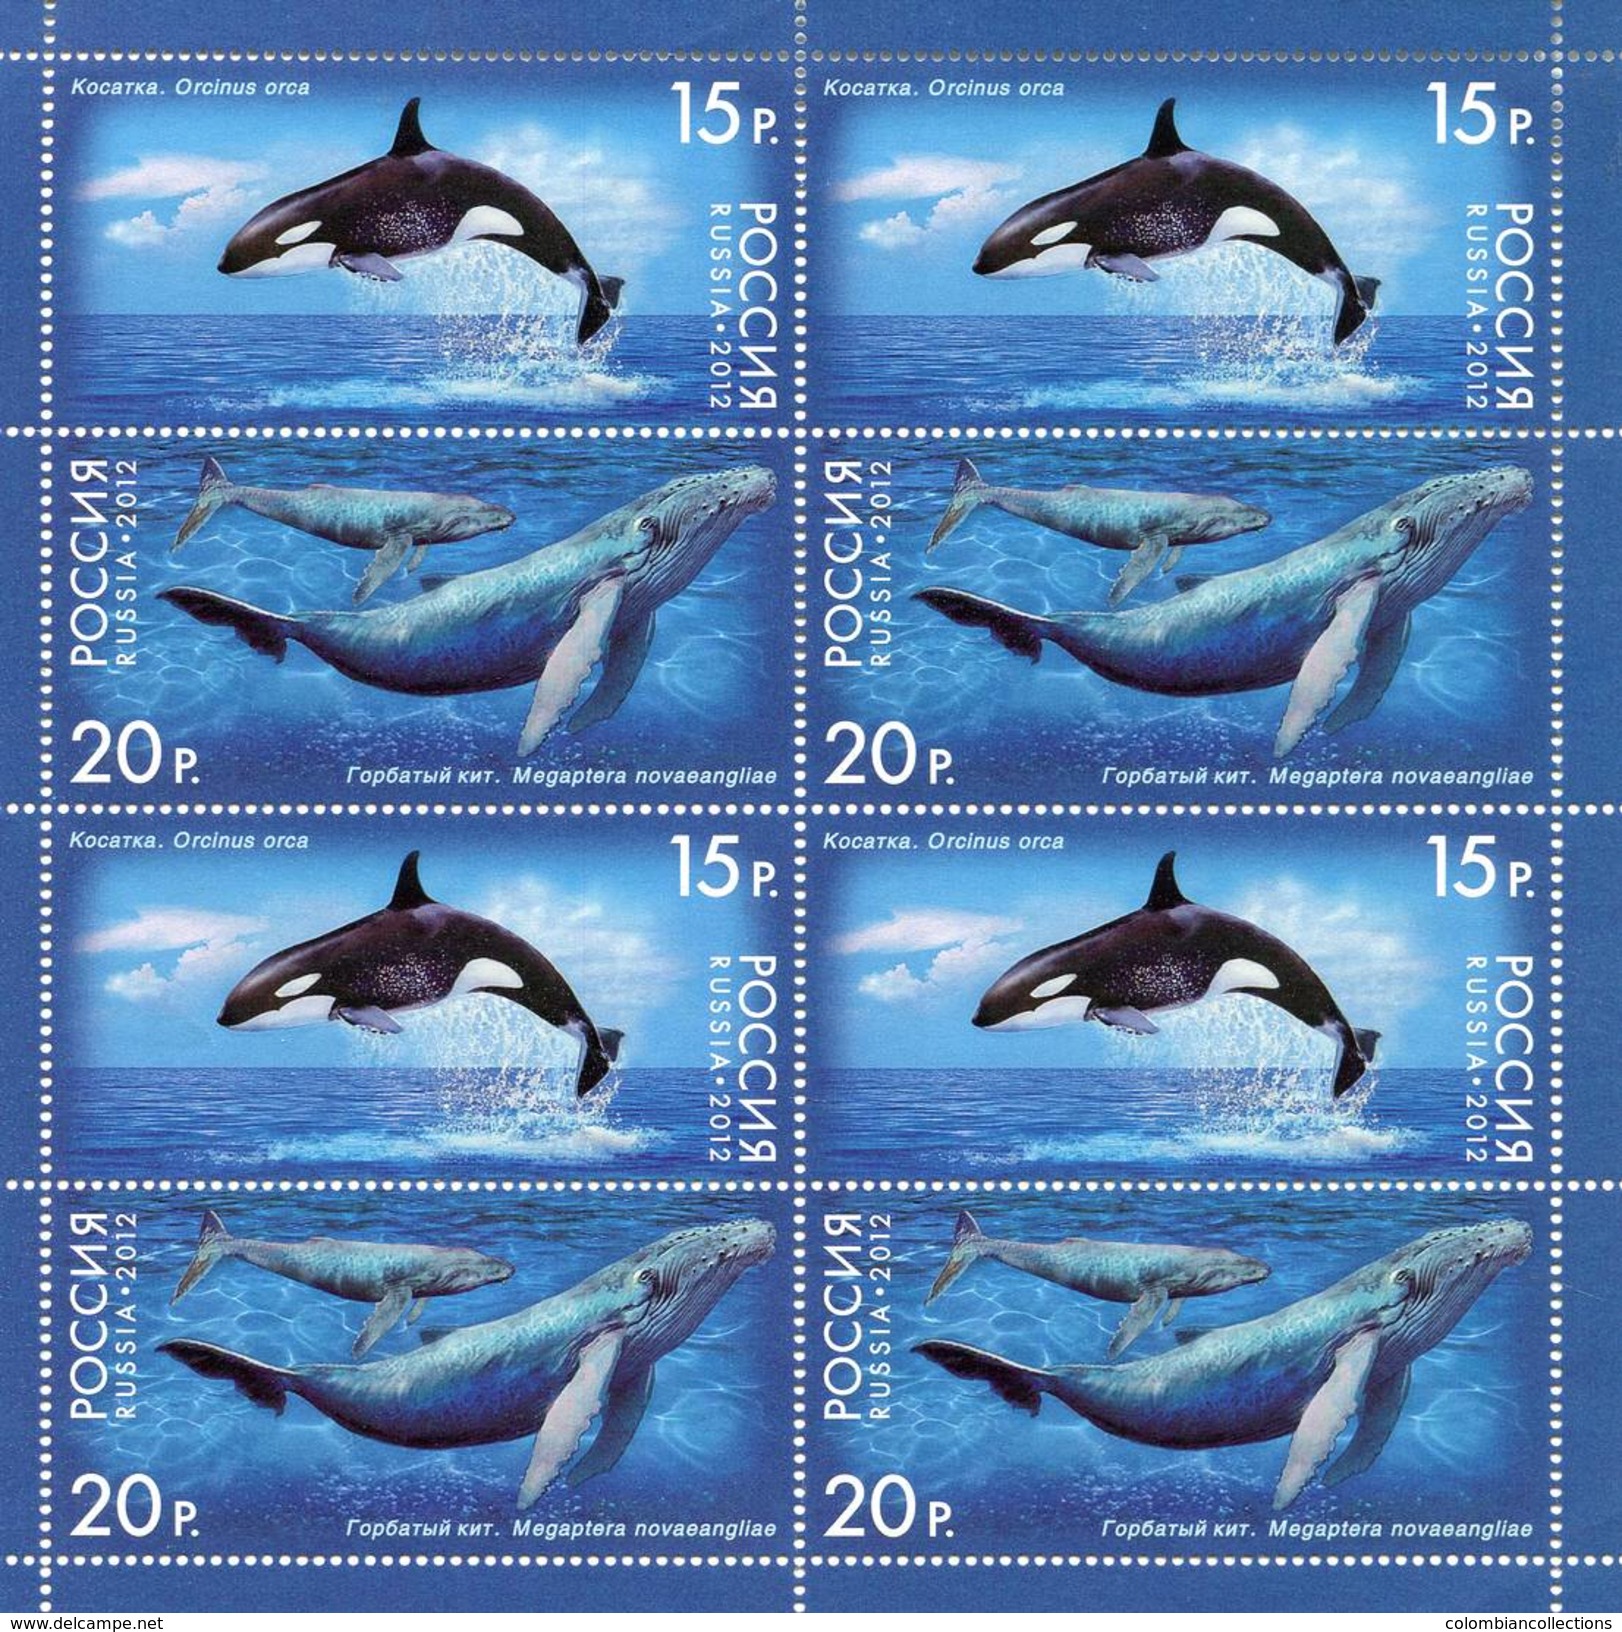 Lote 1788-9P, 2012, Rusia, Russia, Pliego, Sheet, Marine Life, Whale, Orca, Fauna - FDC